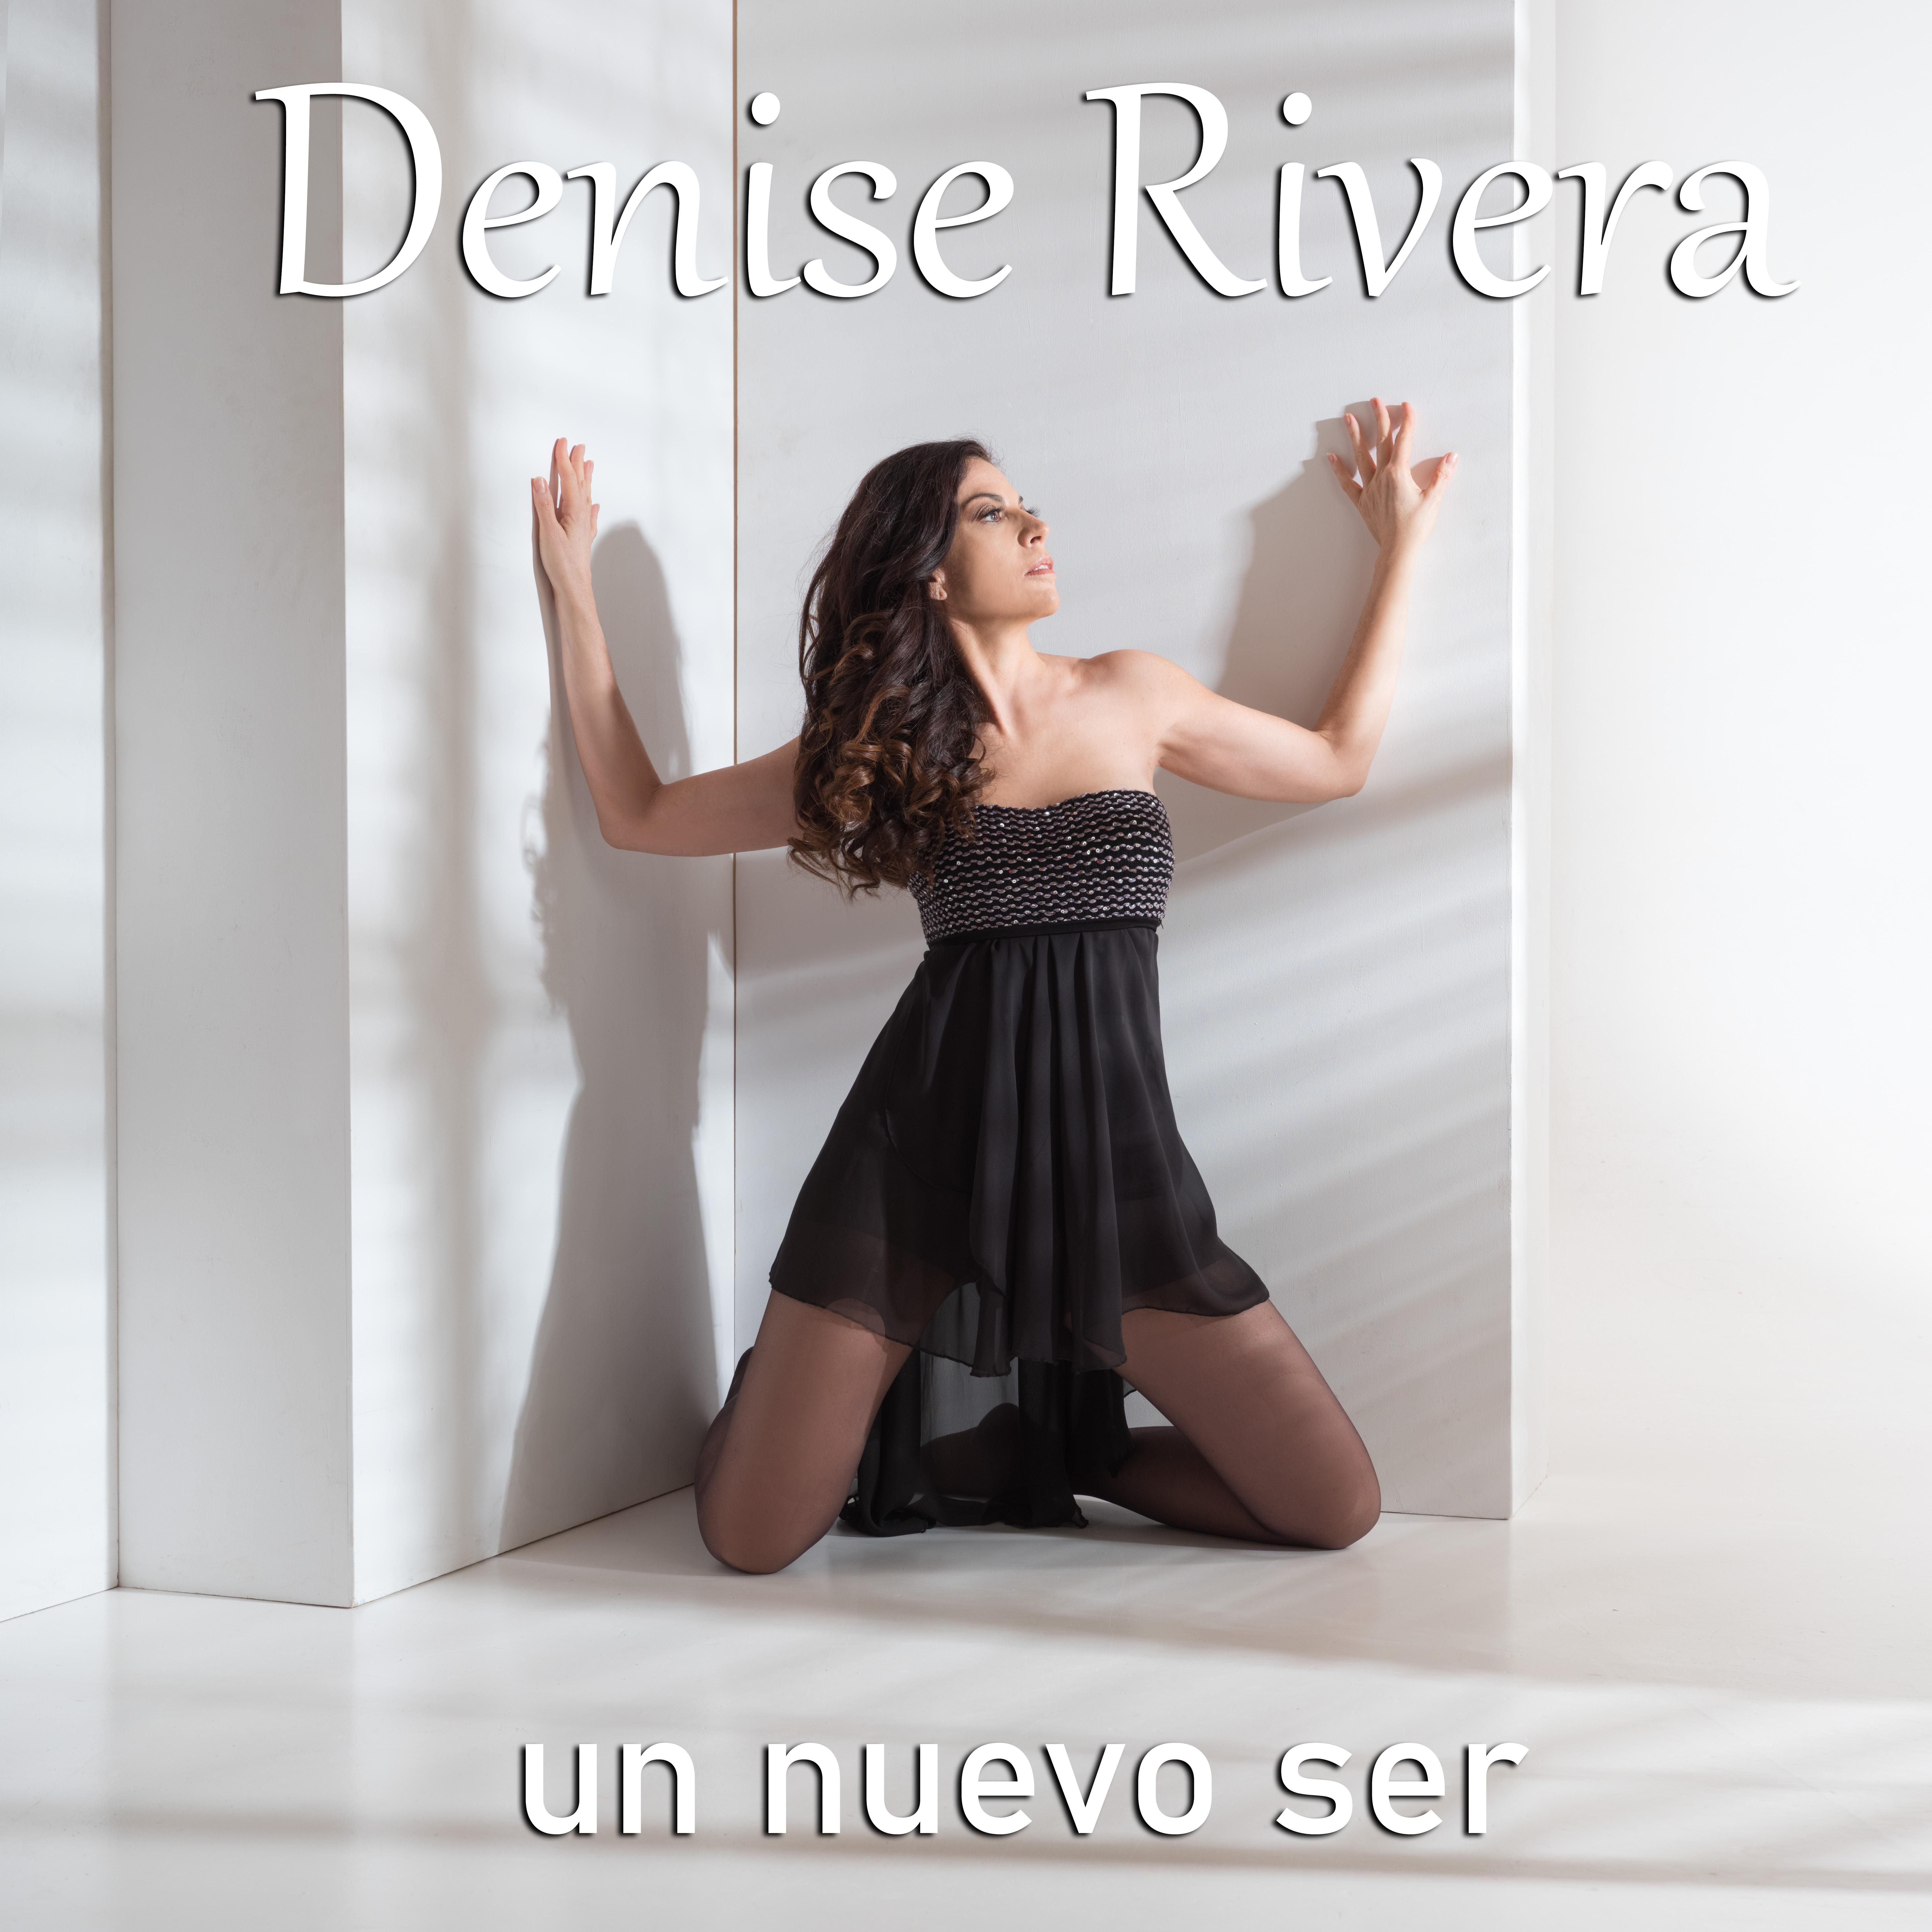 Denise Rivera - Oye